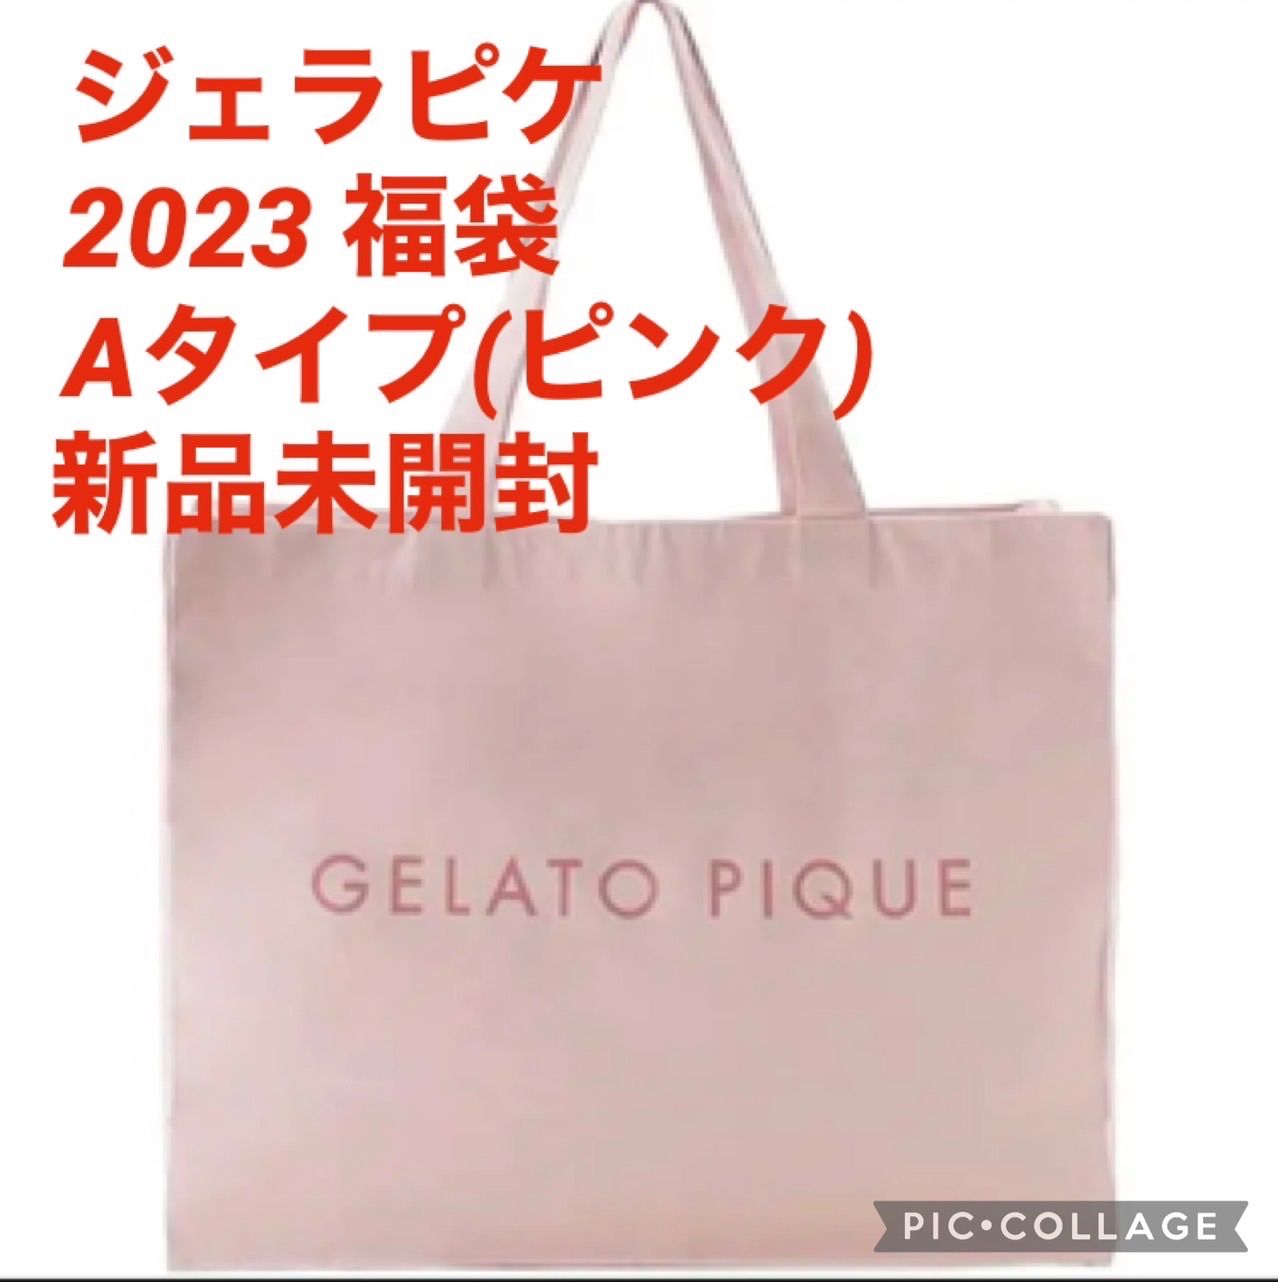 ジェラートピケ福袋2023 Aタイプ(抜き取りなし)-